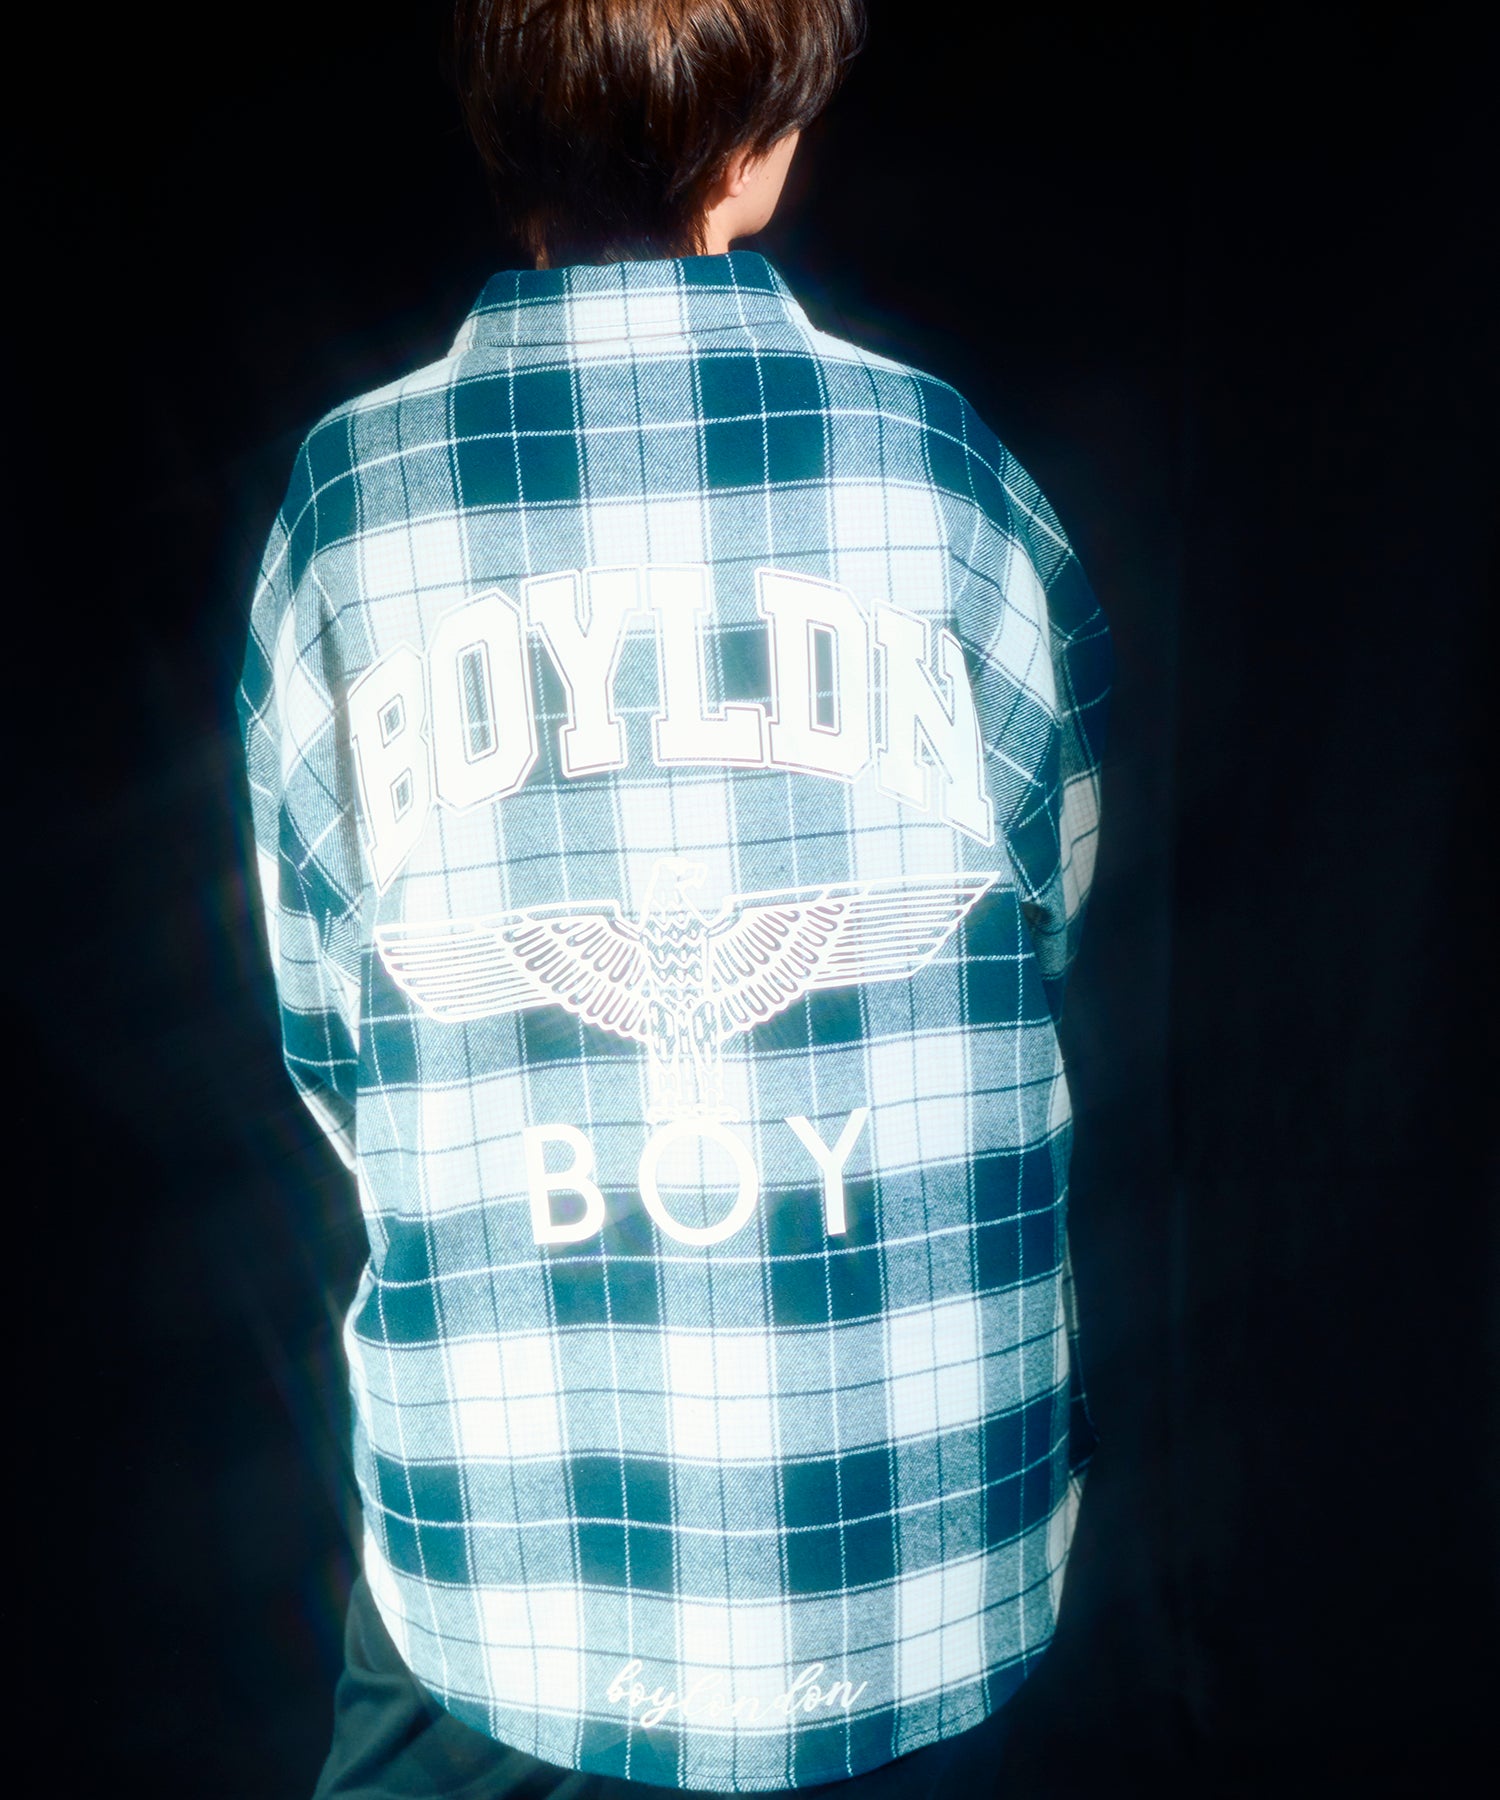 BOYLDN Check Flannel Shirt BLUE【B233N2100606】 – BOY LONDON